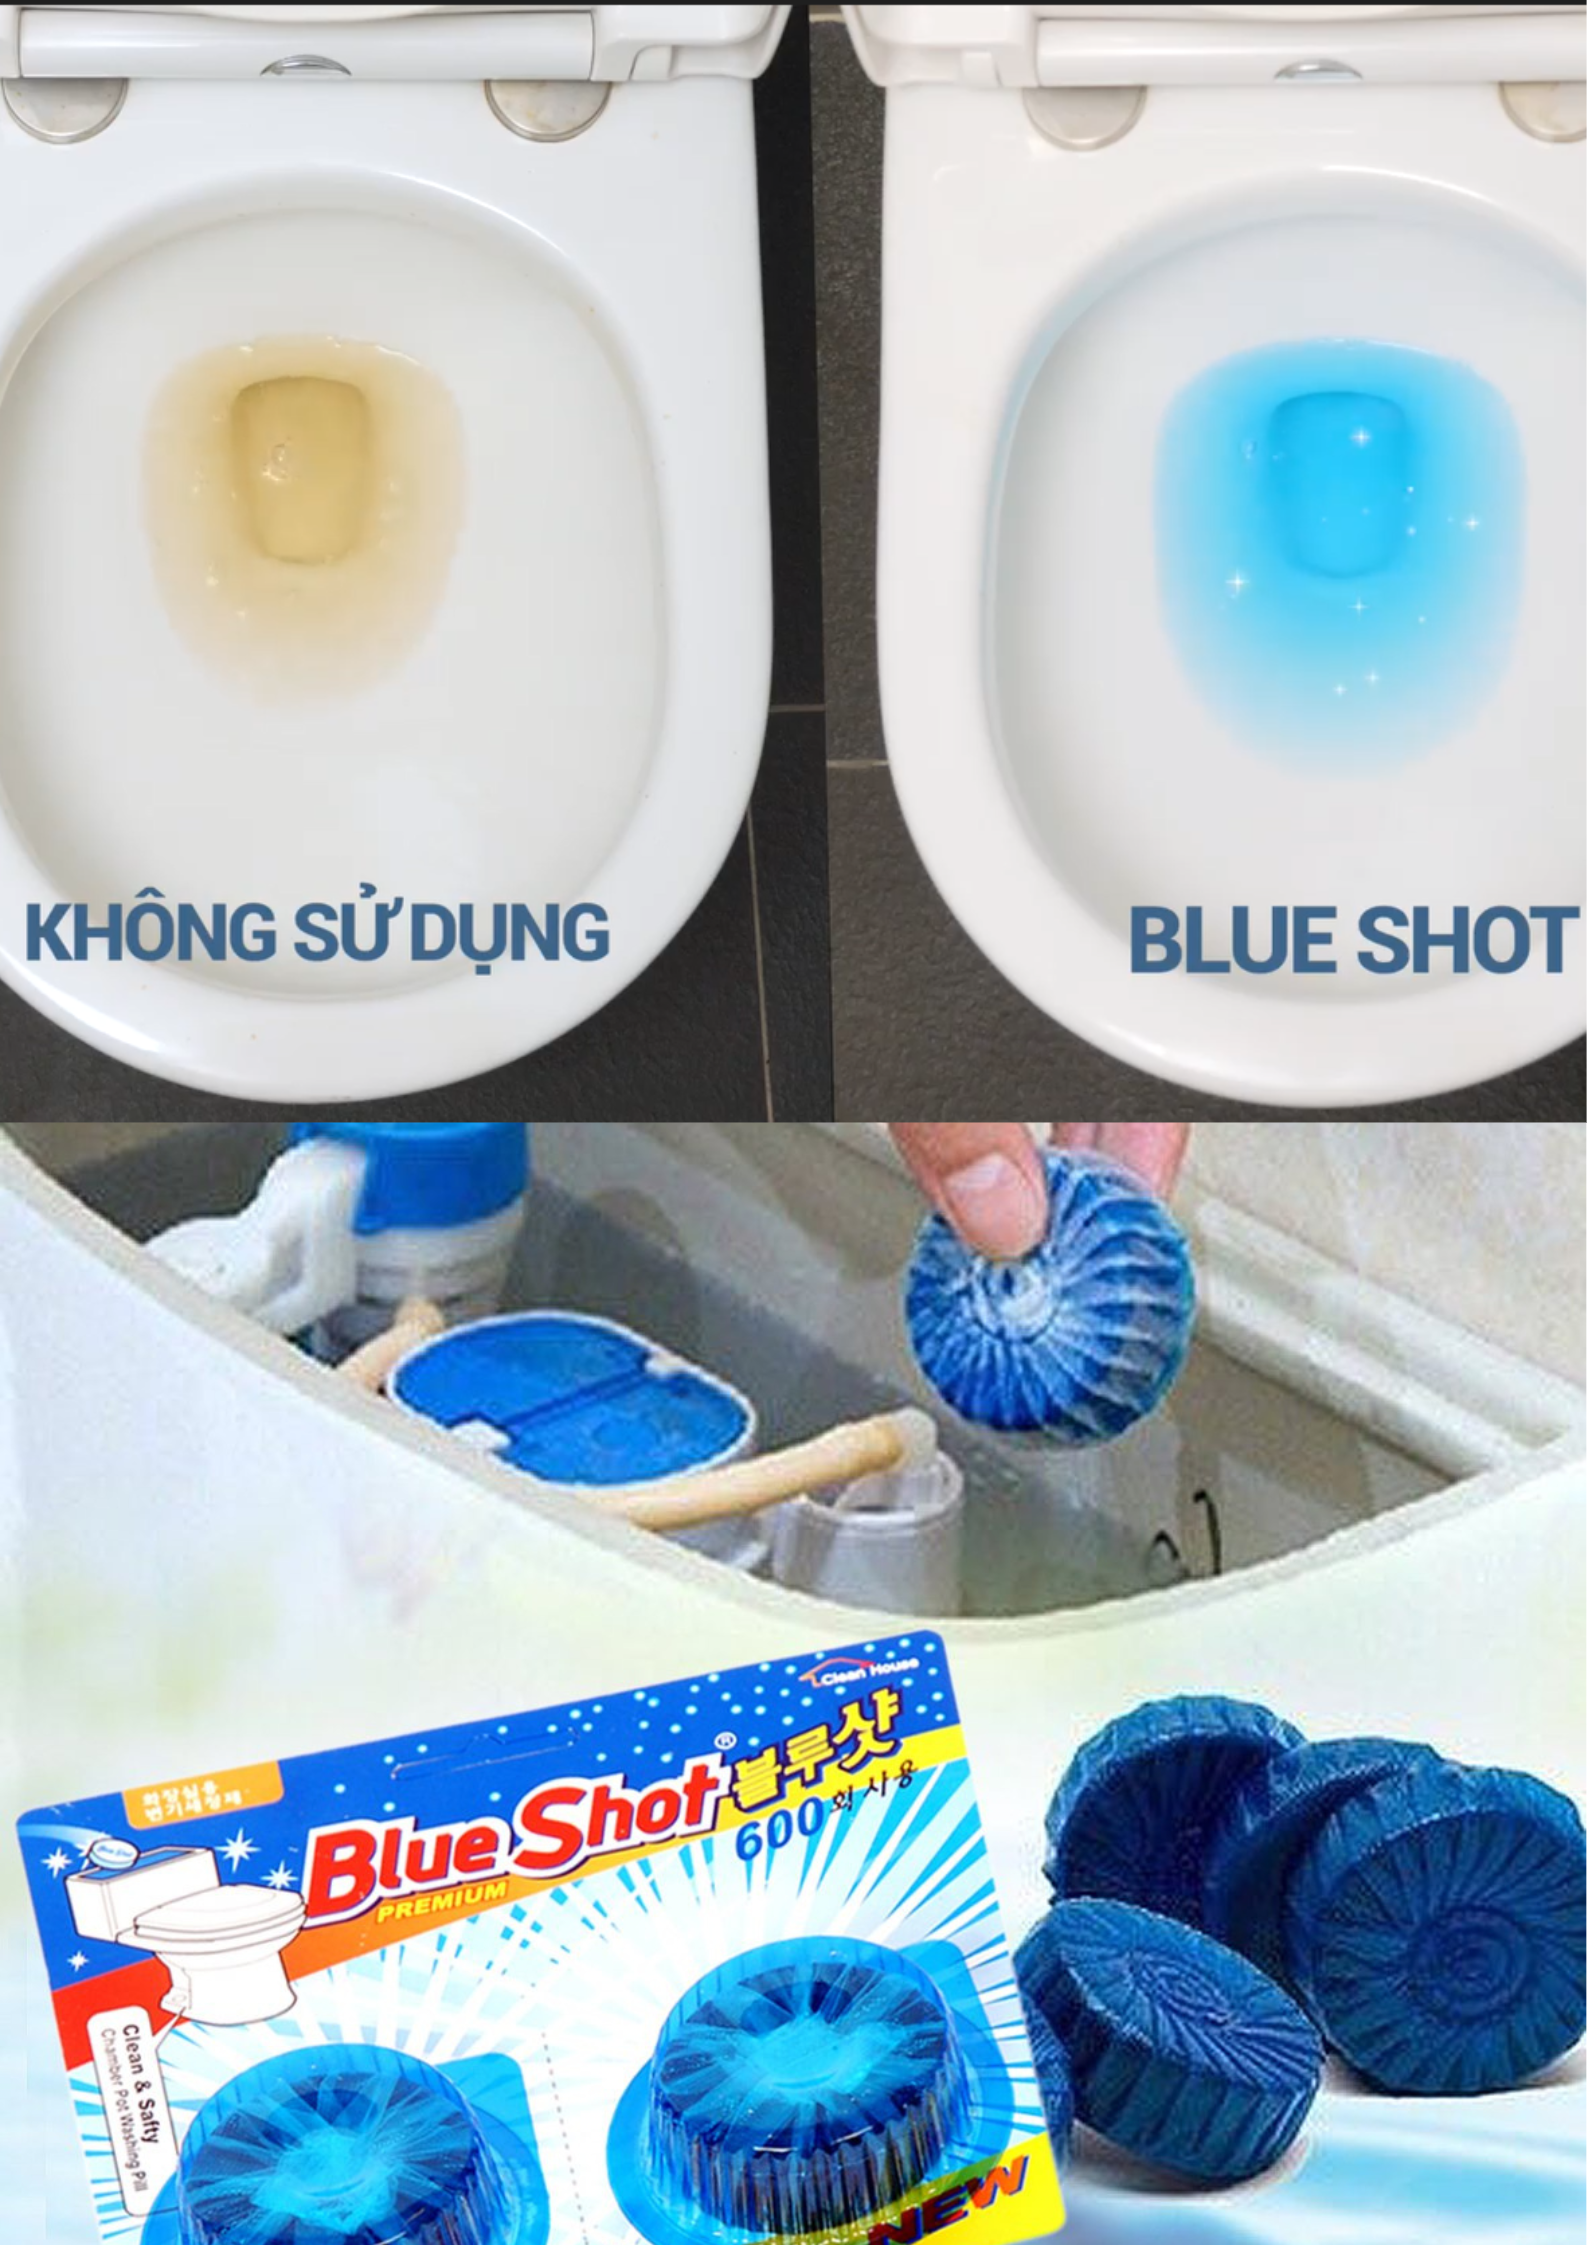 Set 2 Vỉ Viên thả vệ sinh khử mùi khử khuẩn bồn cầu Blueshot Hàn Quốc (1 viên 600 lần xả nước~1 tháng) Hàng mới về